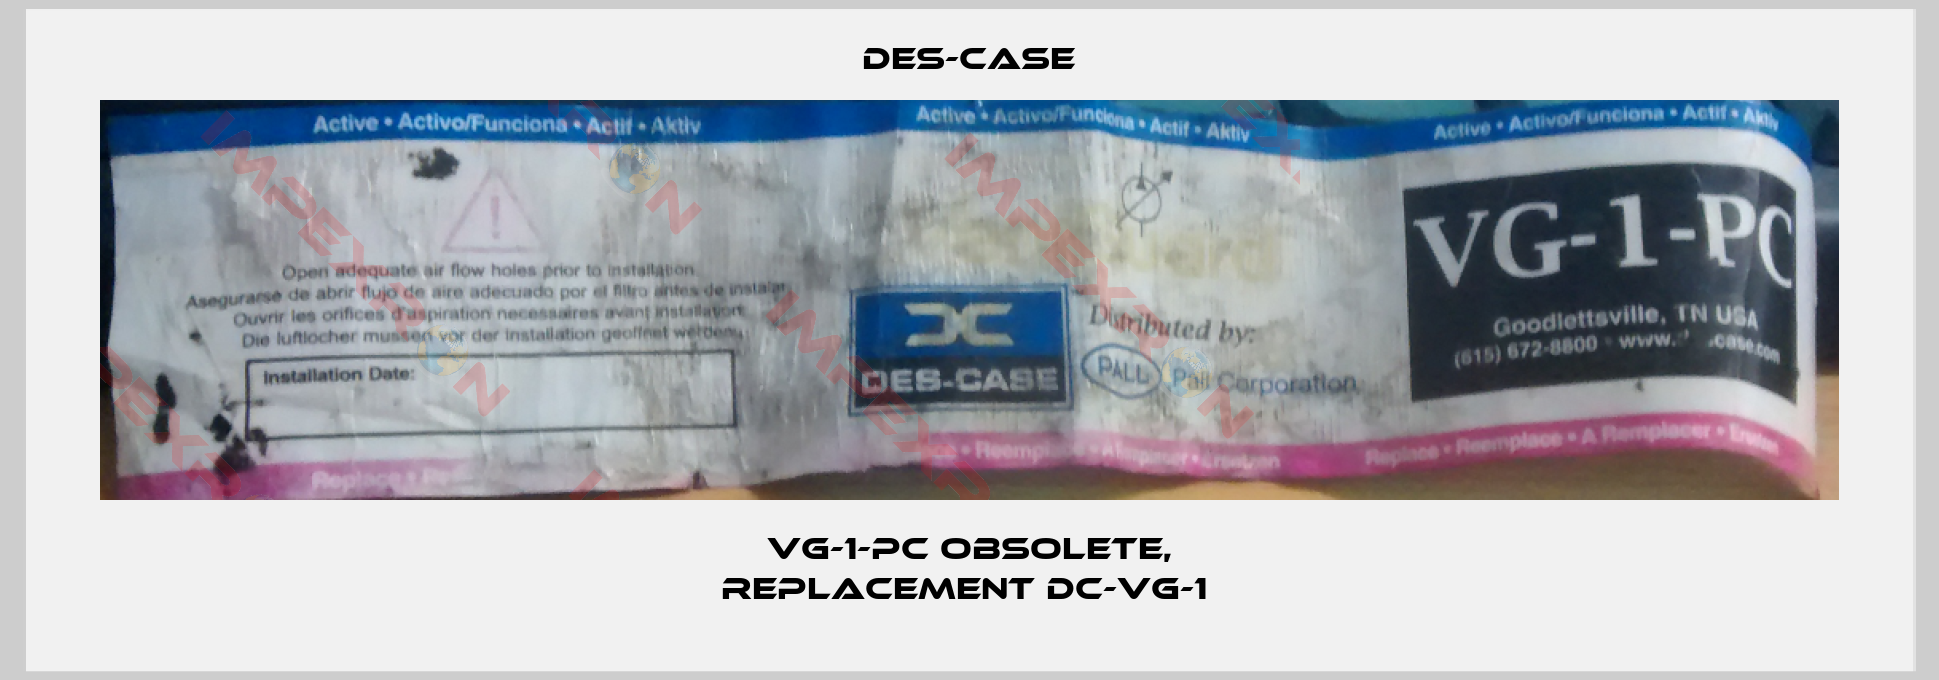 Des-Case-VG-1-PC obsolete, replacement DC-VG-1 